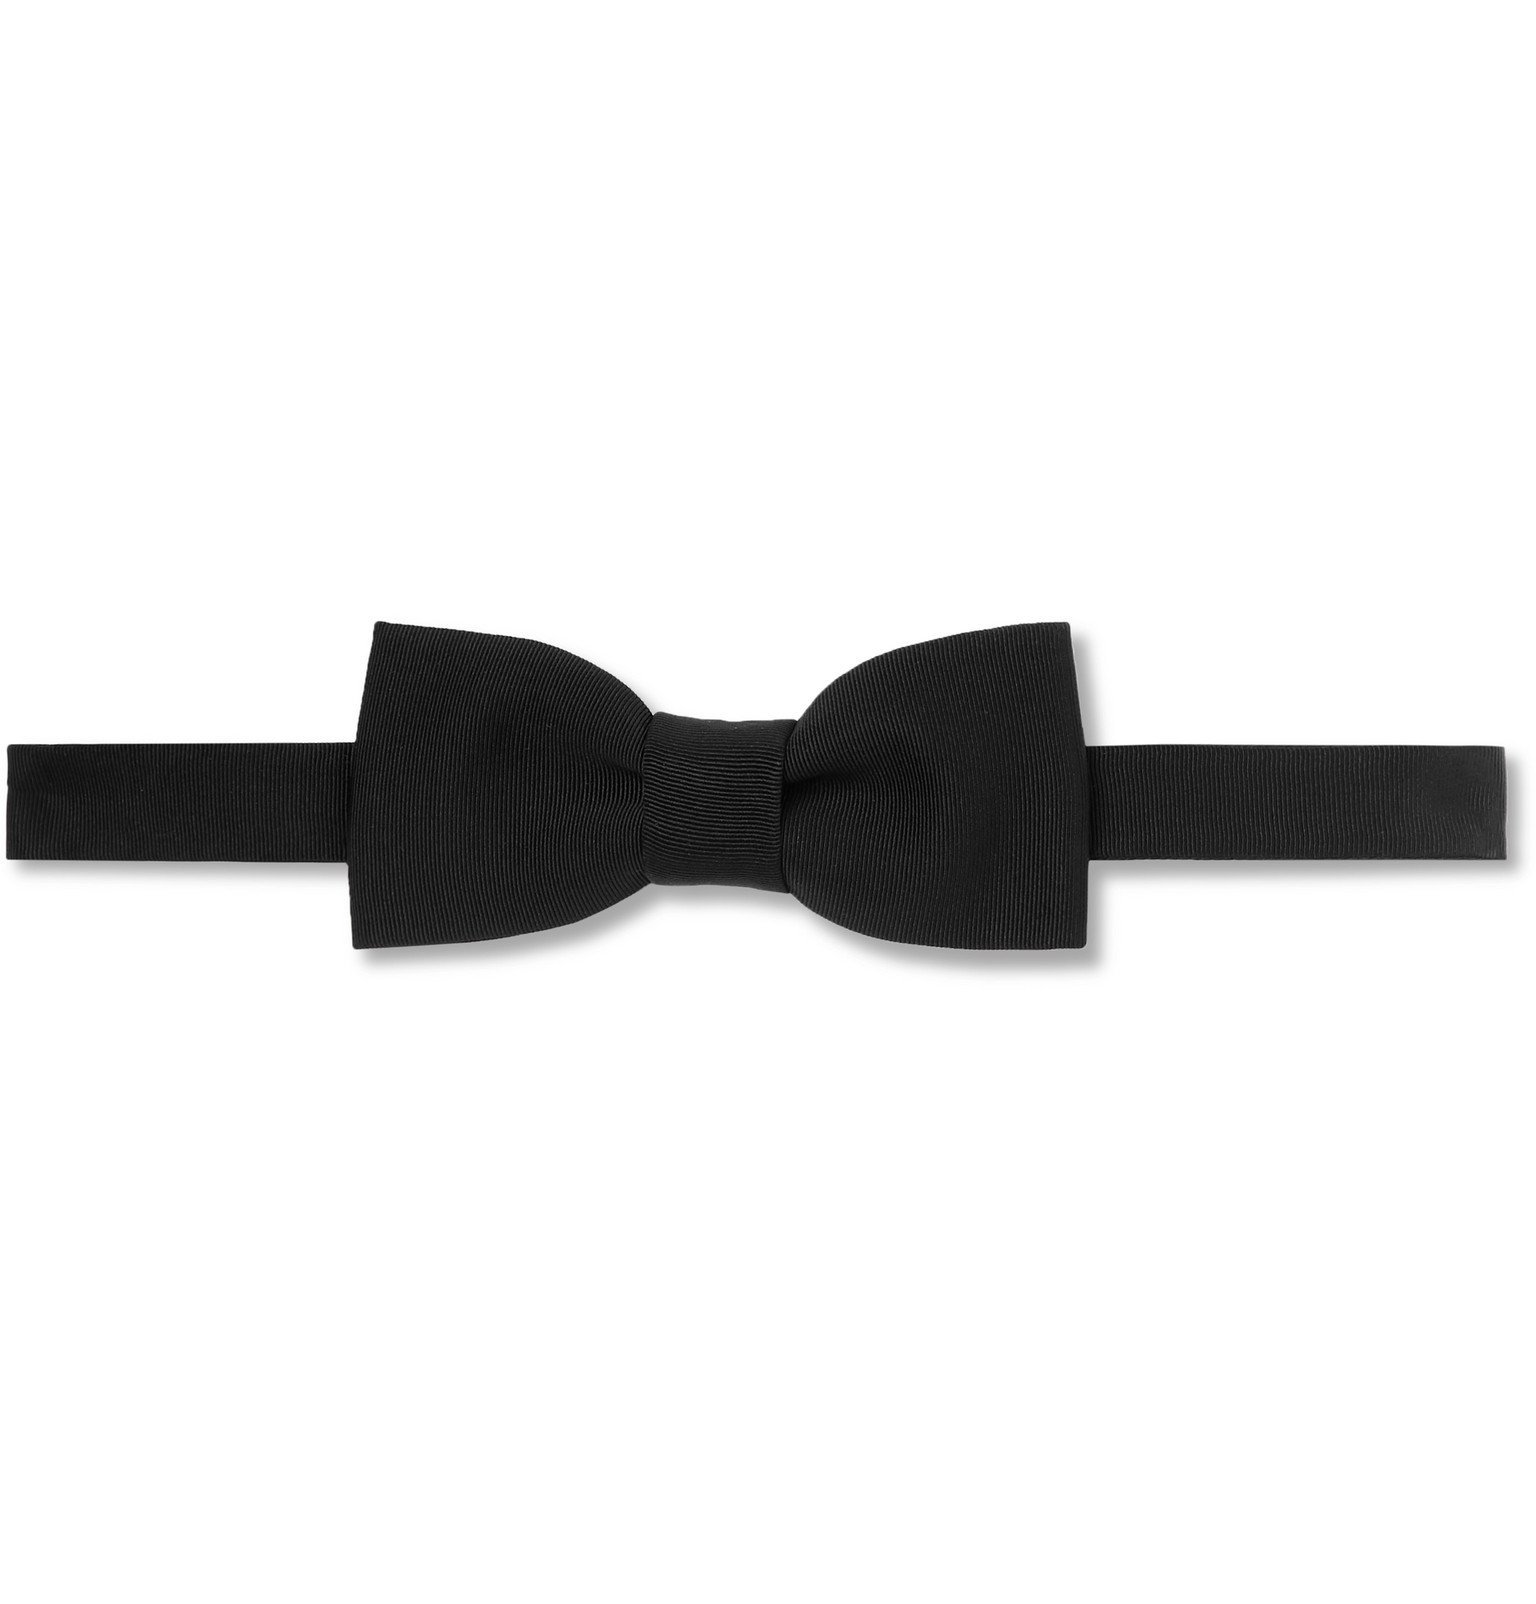 Bottega Veneta - Pre-Tied Silk-Grosgrain Bow Tie - Black Bottega Veneta